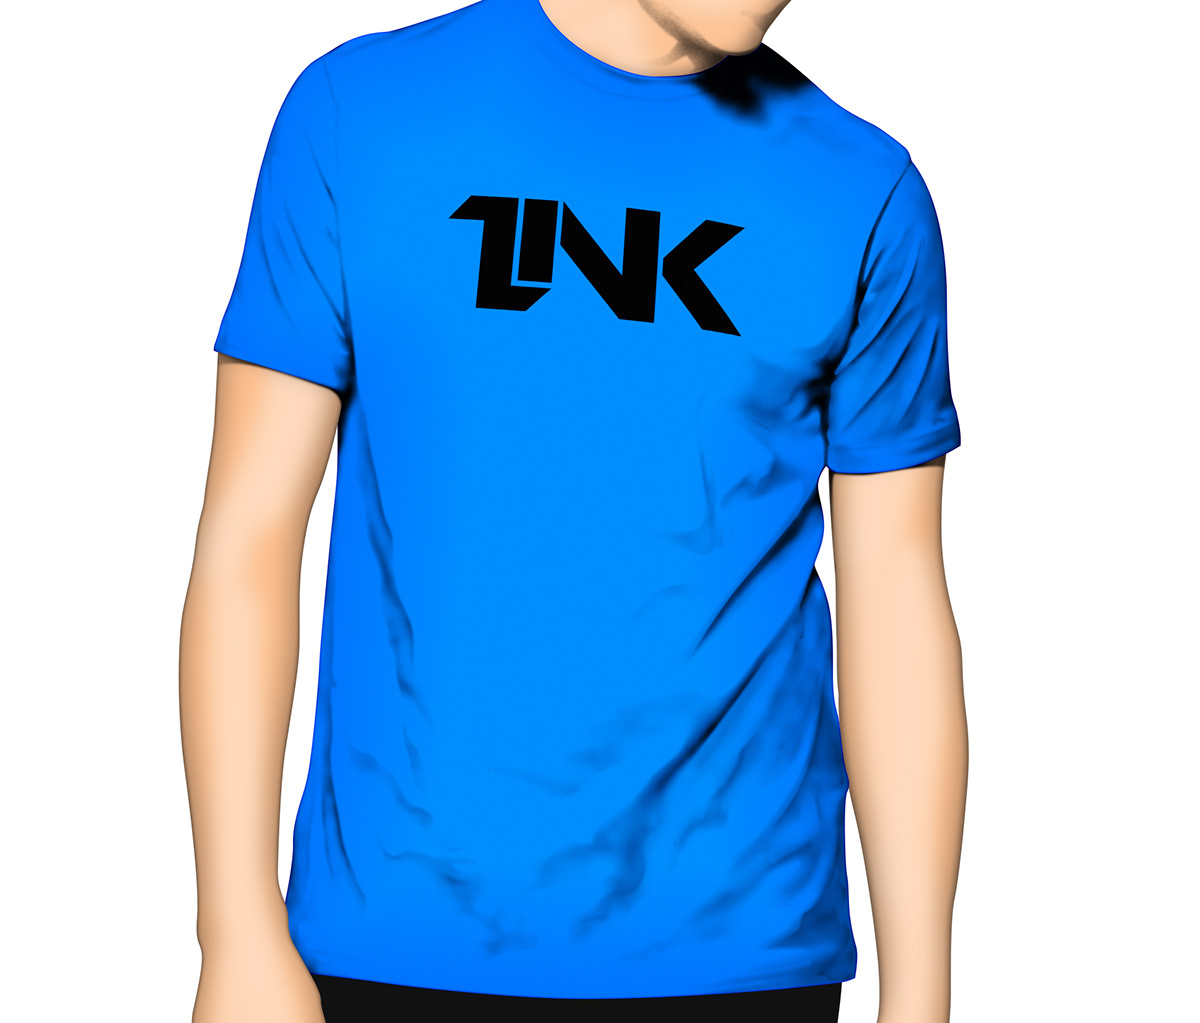 Link Games link design future youtube design facebook design T-Shirt Design mock-up Desktop Backgrounds